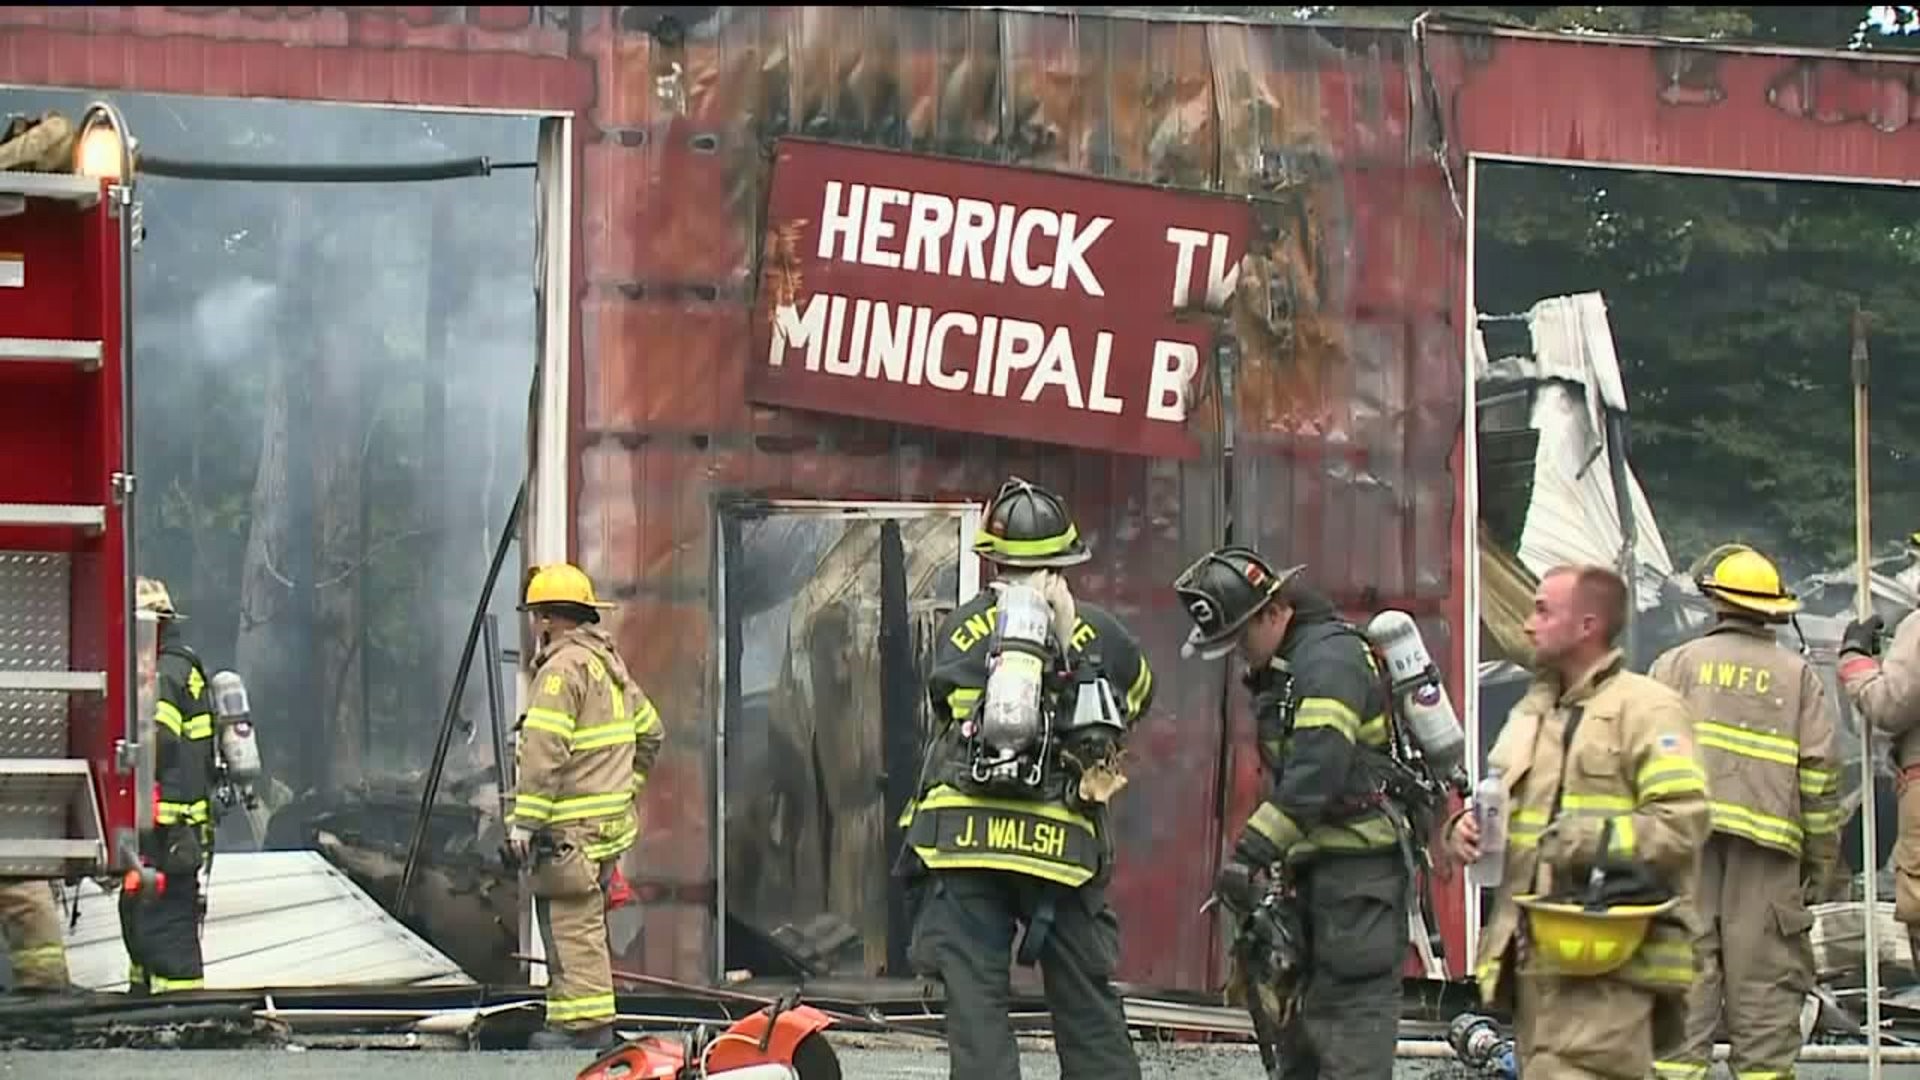 Fire Guts Herrick Township Municipal Building